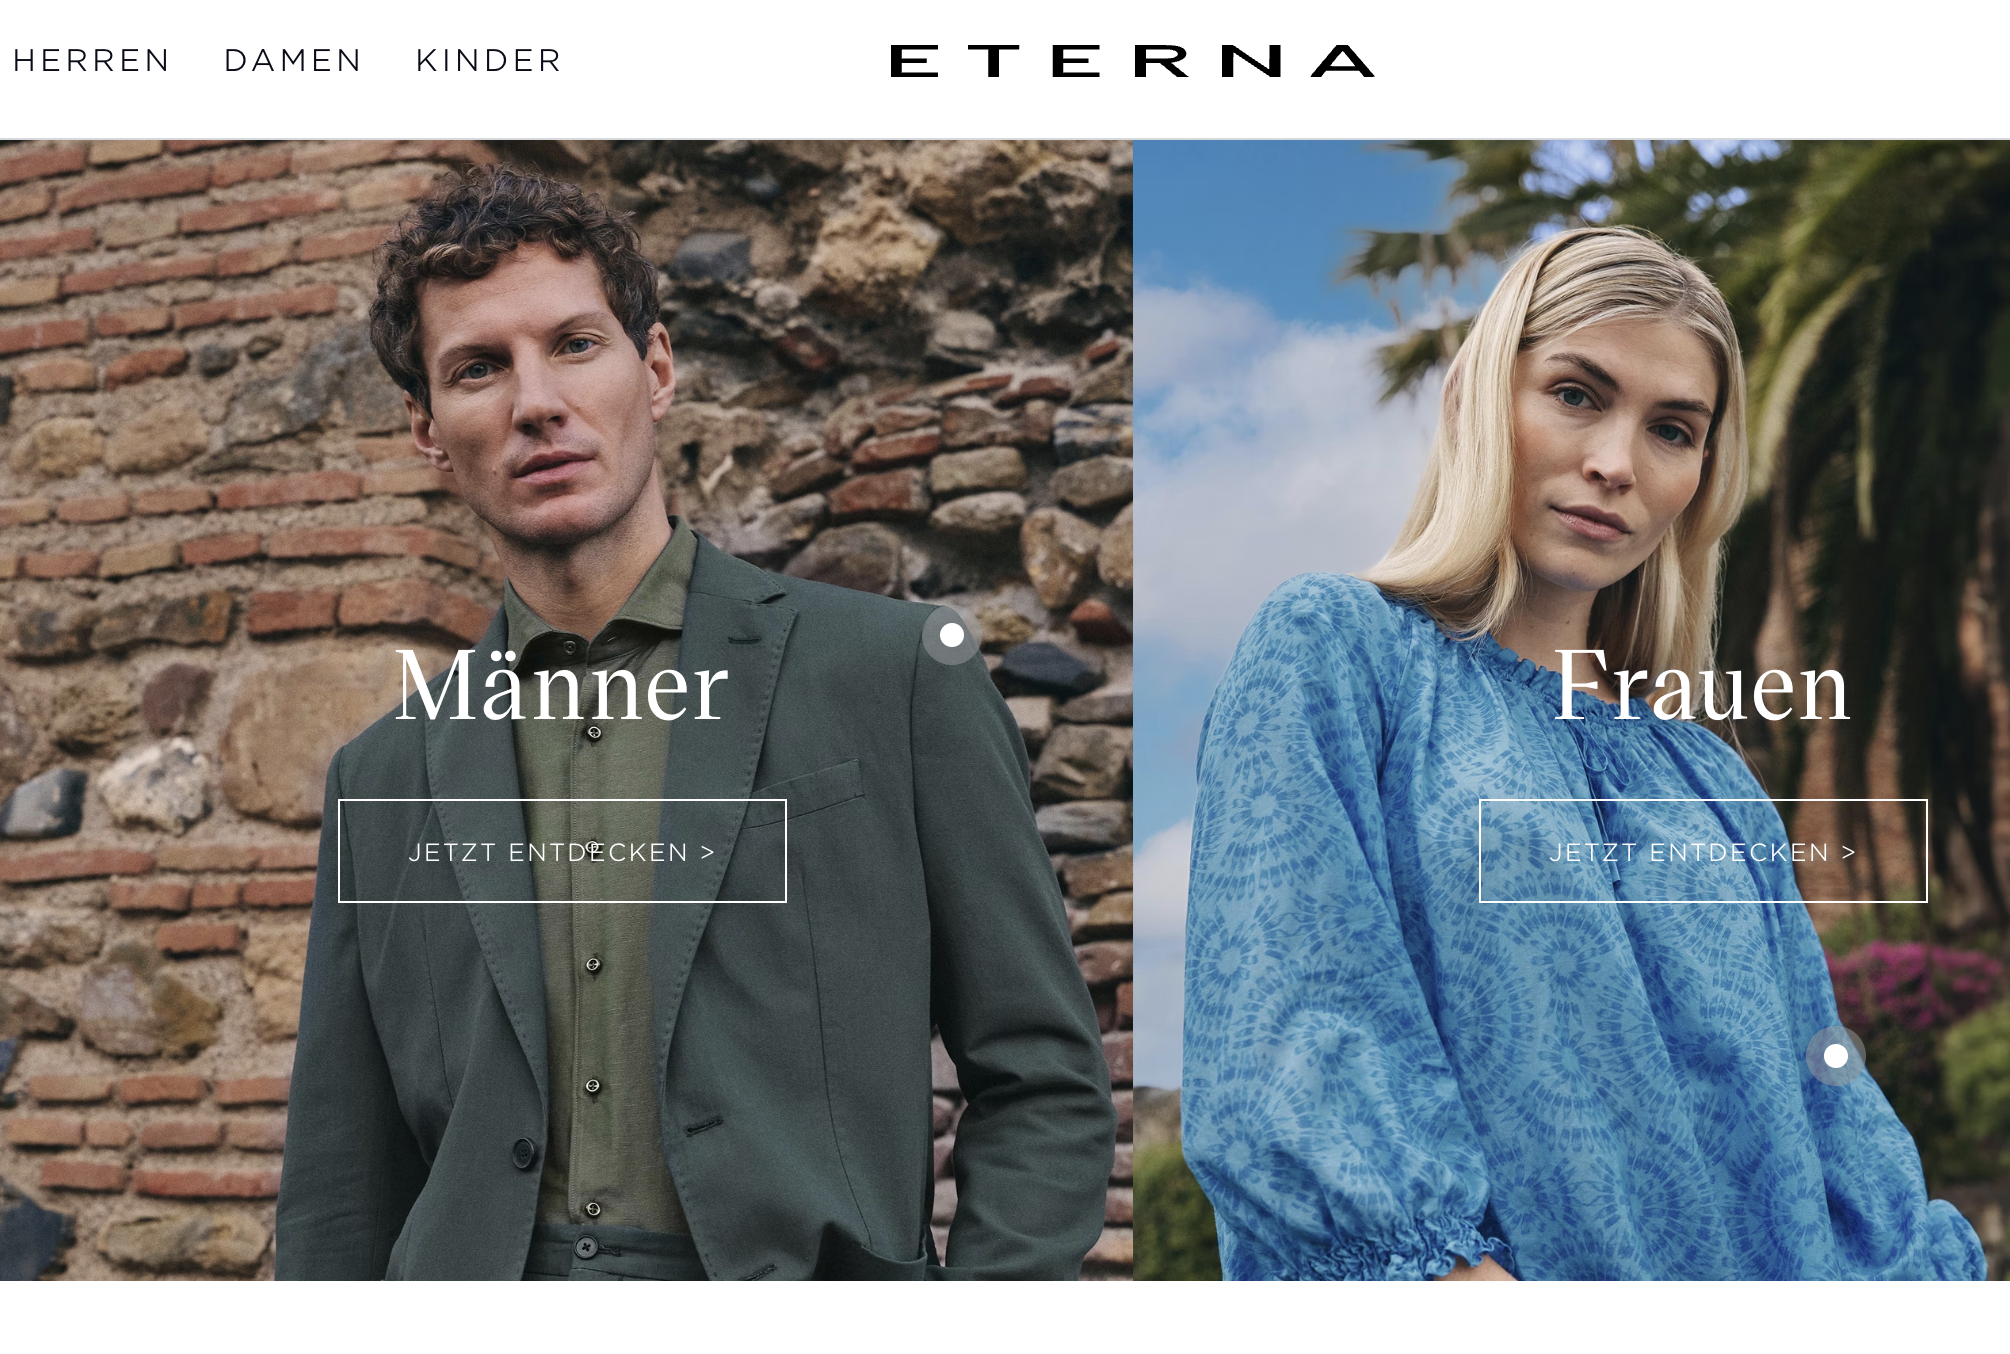 ETERNA – Hochwertige Hemden und Blusen seit 1863